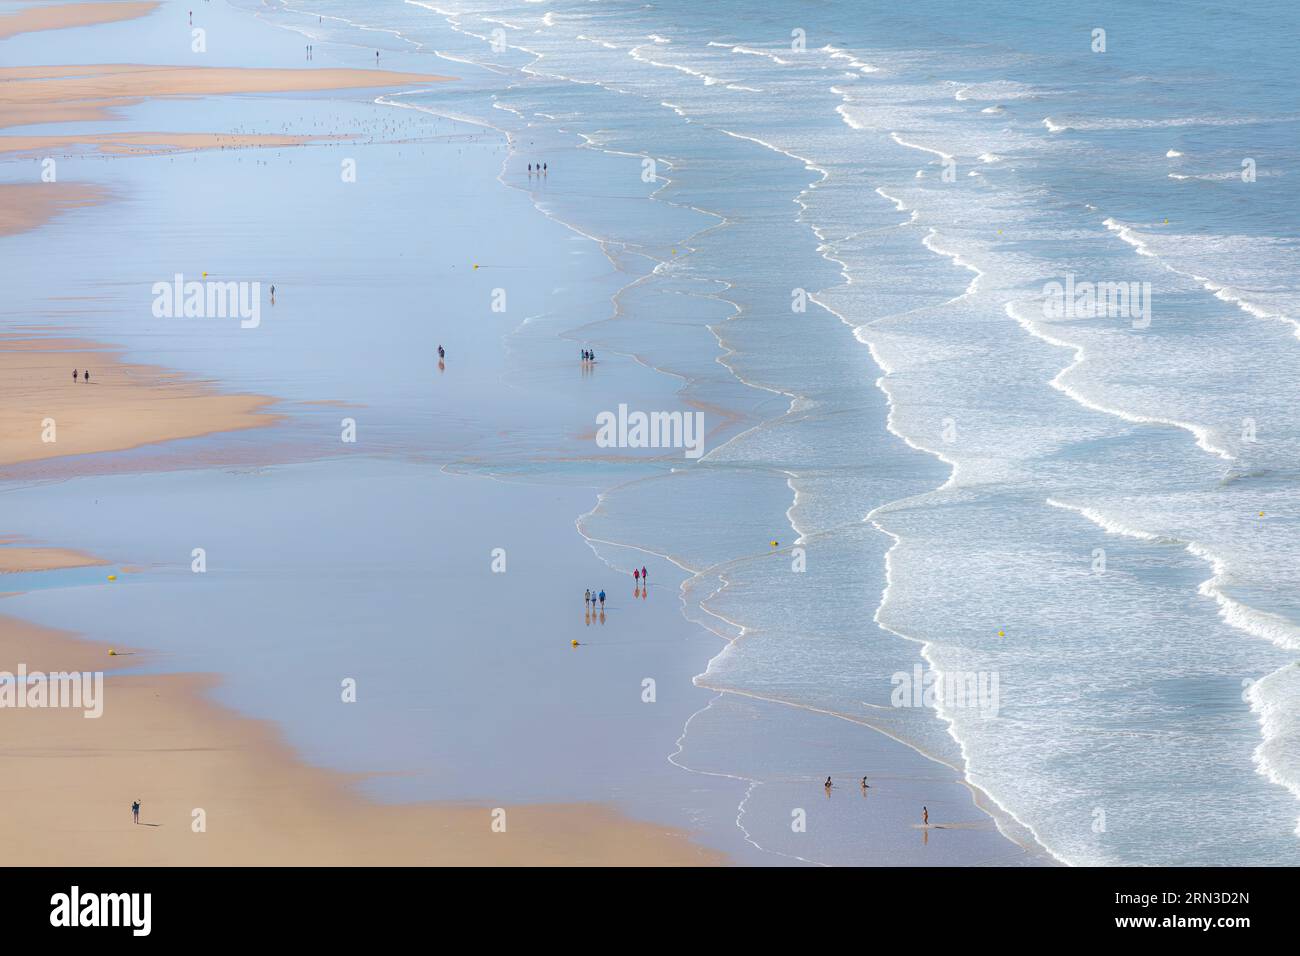 Francia, Vendee, St Gilles Croix de vie, gente che cammina sulla spiaggia con la bassa marea (vista aerea) Foto Stock